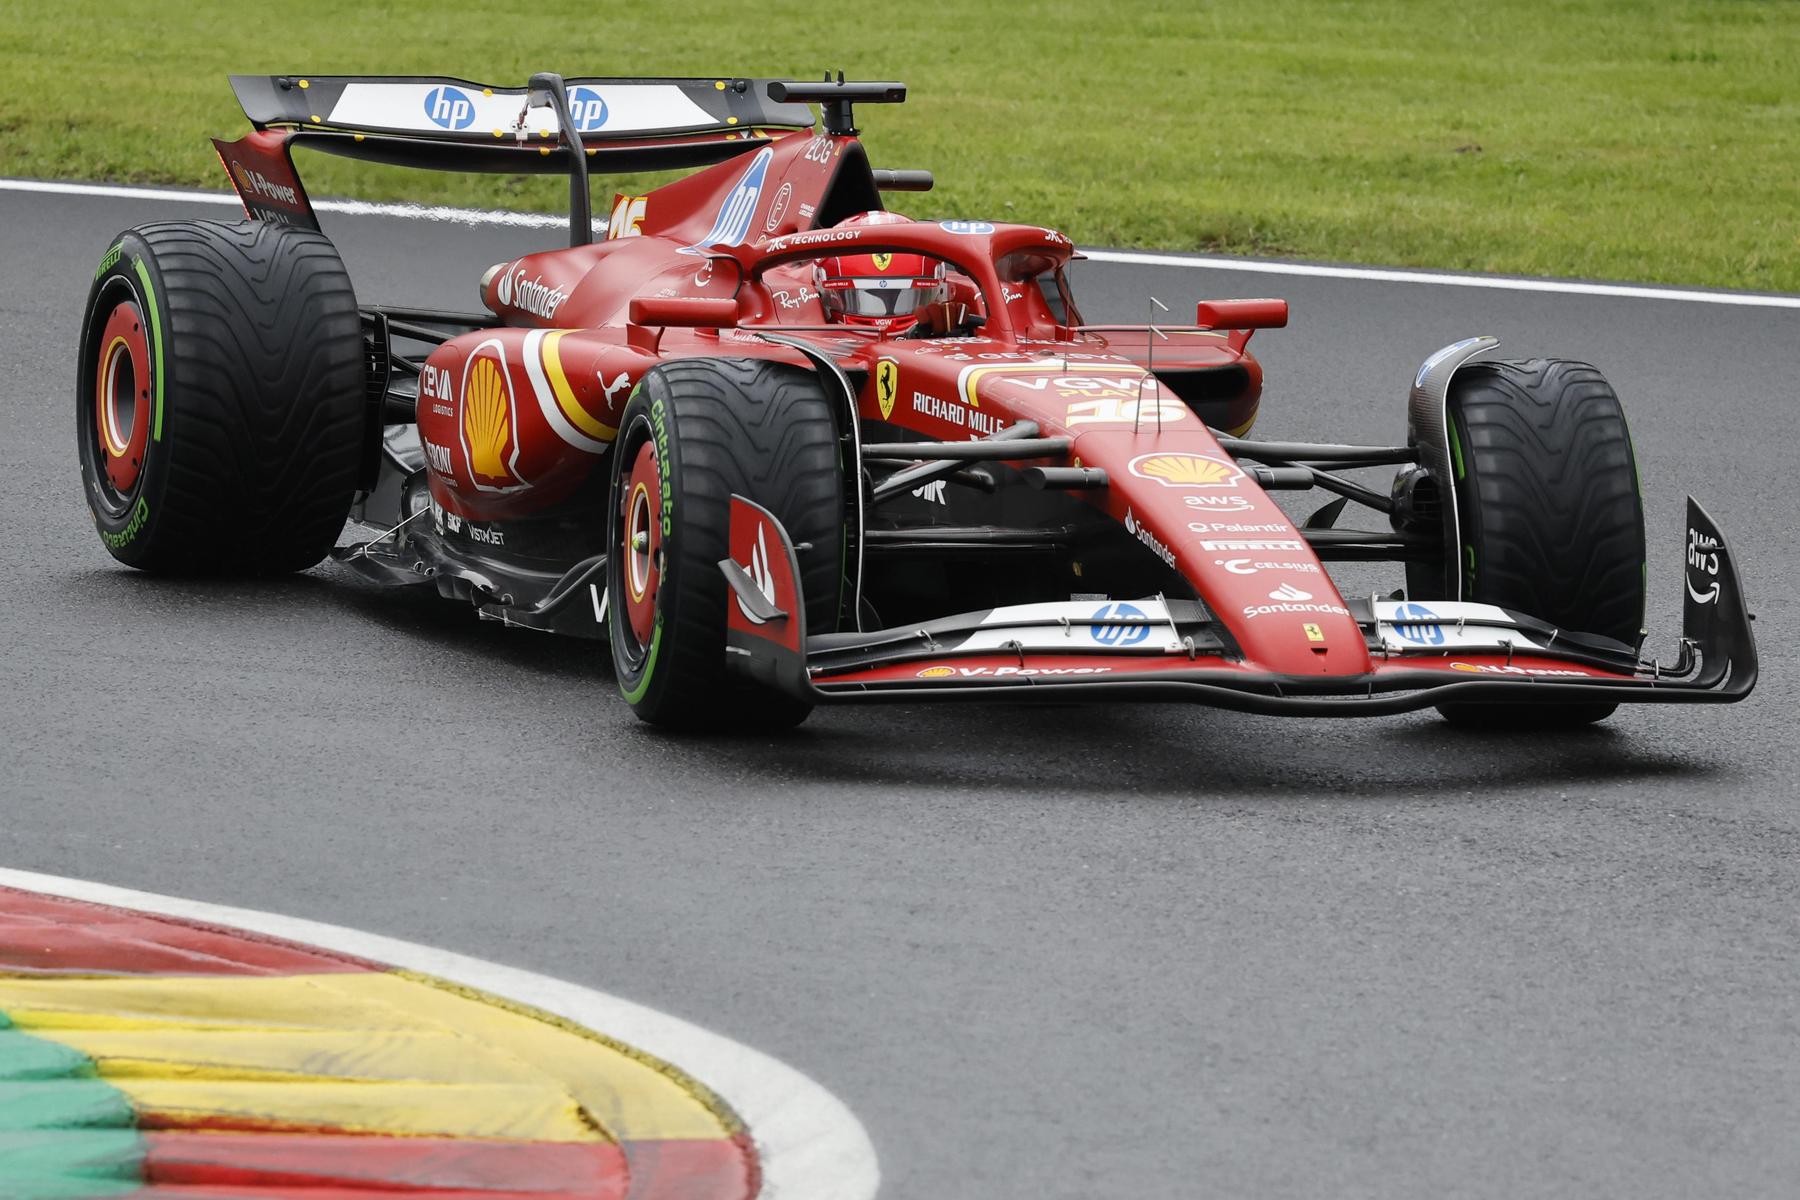 Formel 1 in Spa: Der Große Preis von Belgien jetzt im Liveticker!